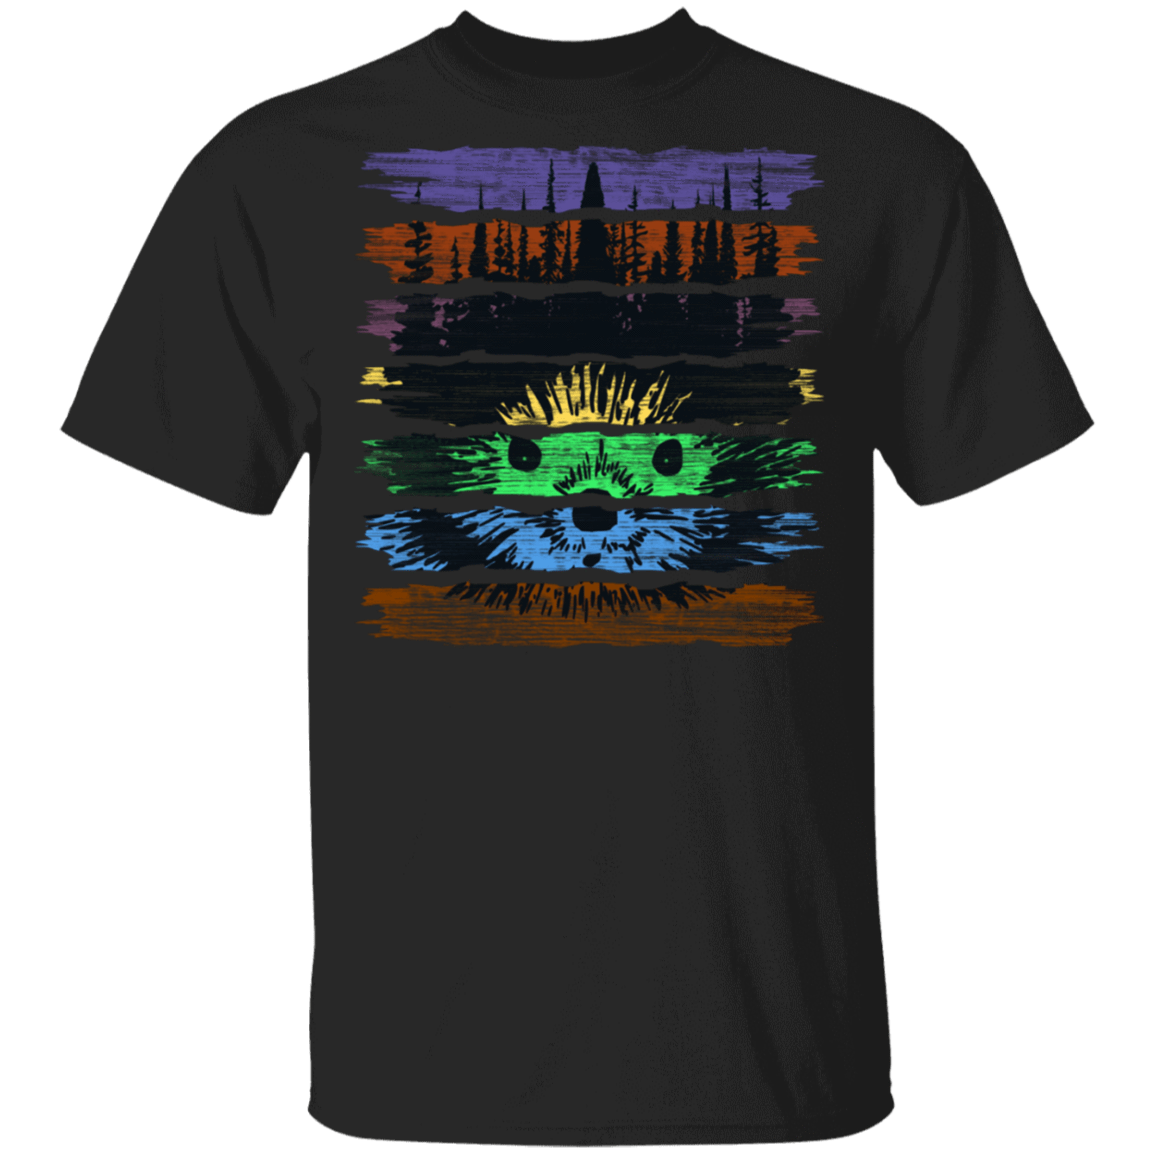 T-Shirts Black / S Porcupine Forest T-Shirt